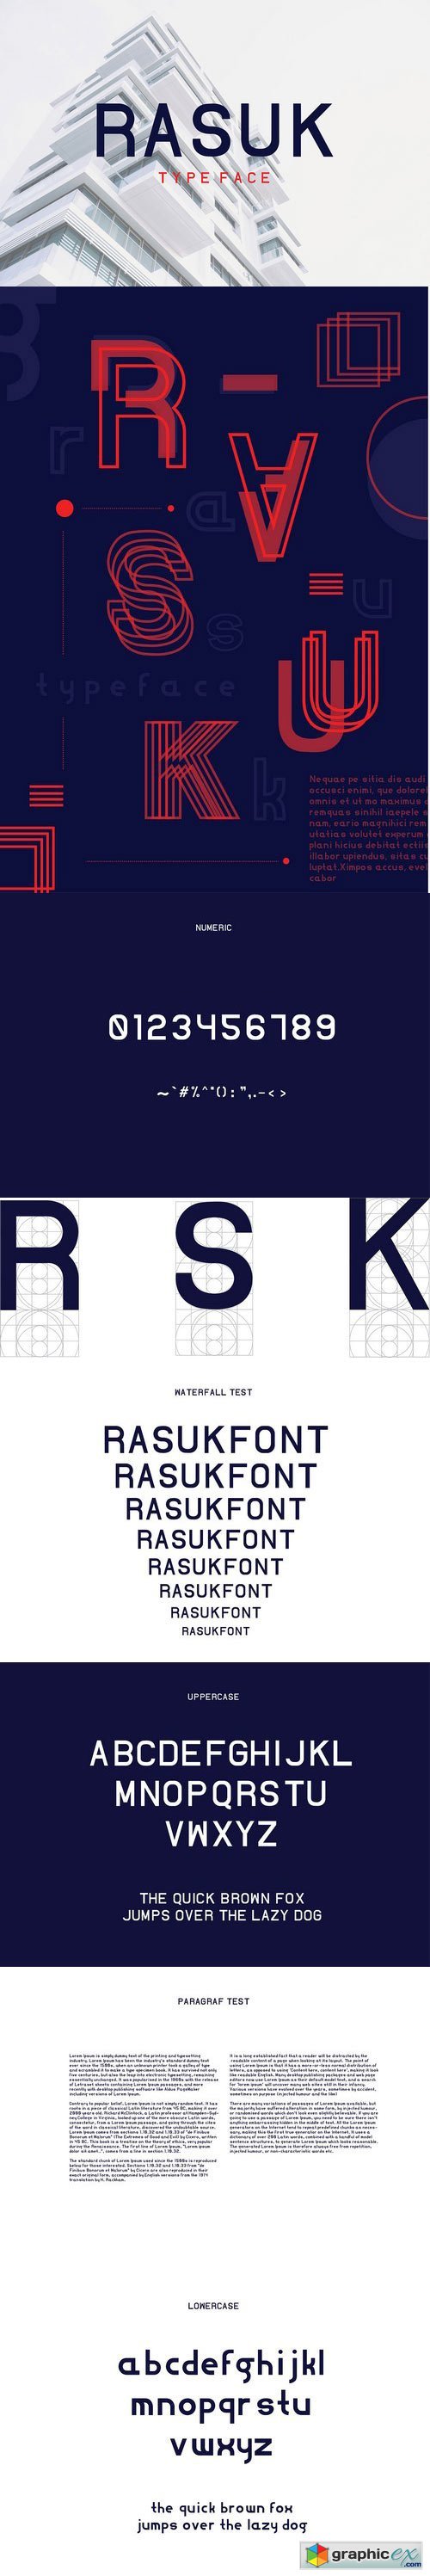 Rasuk Typeface